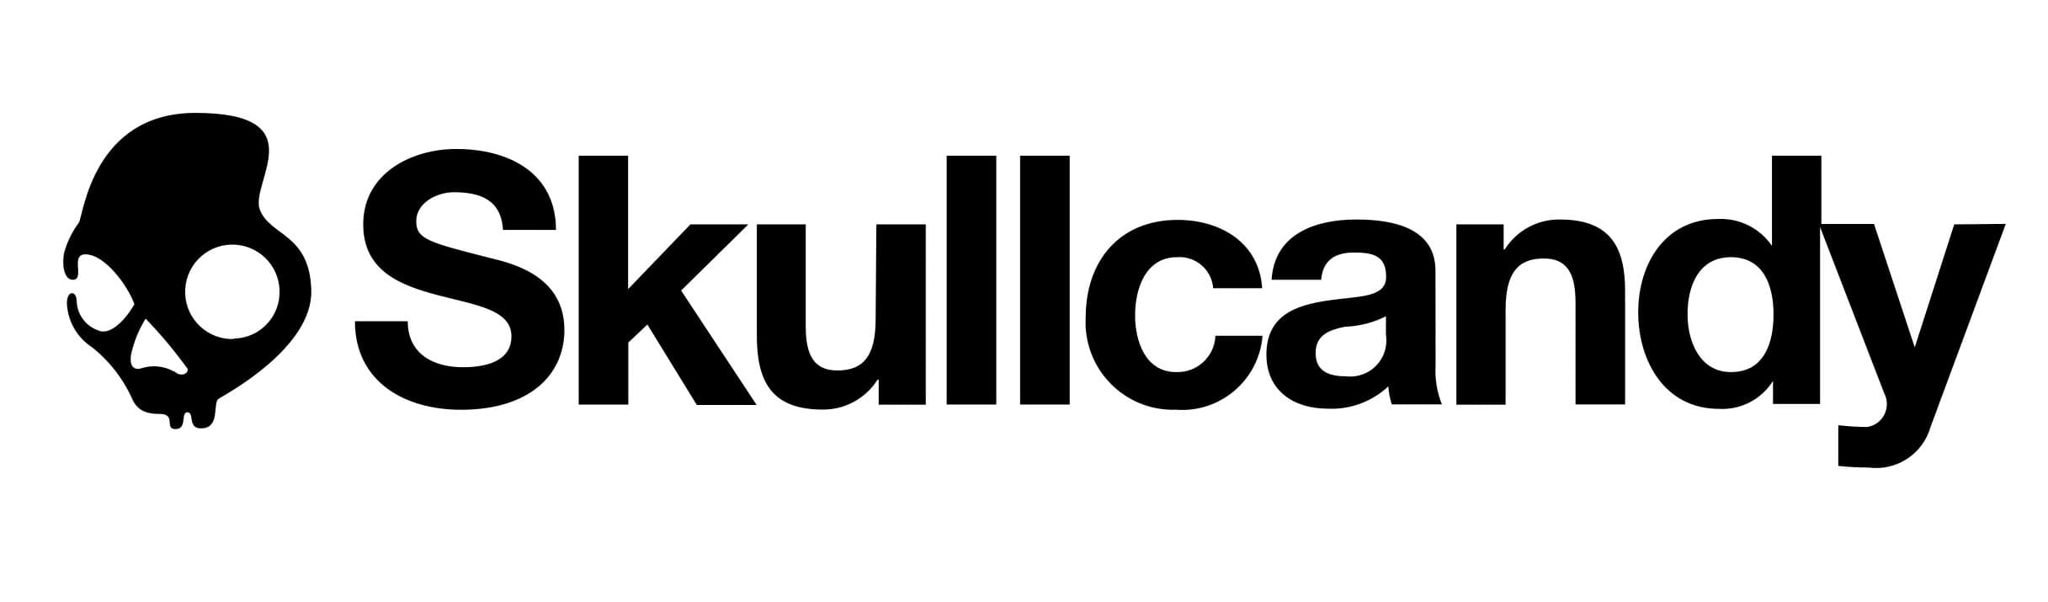 Skullcandy logo (1)